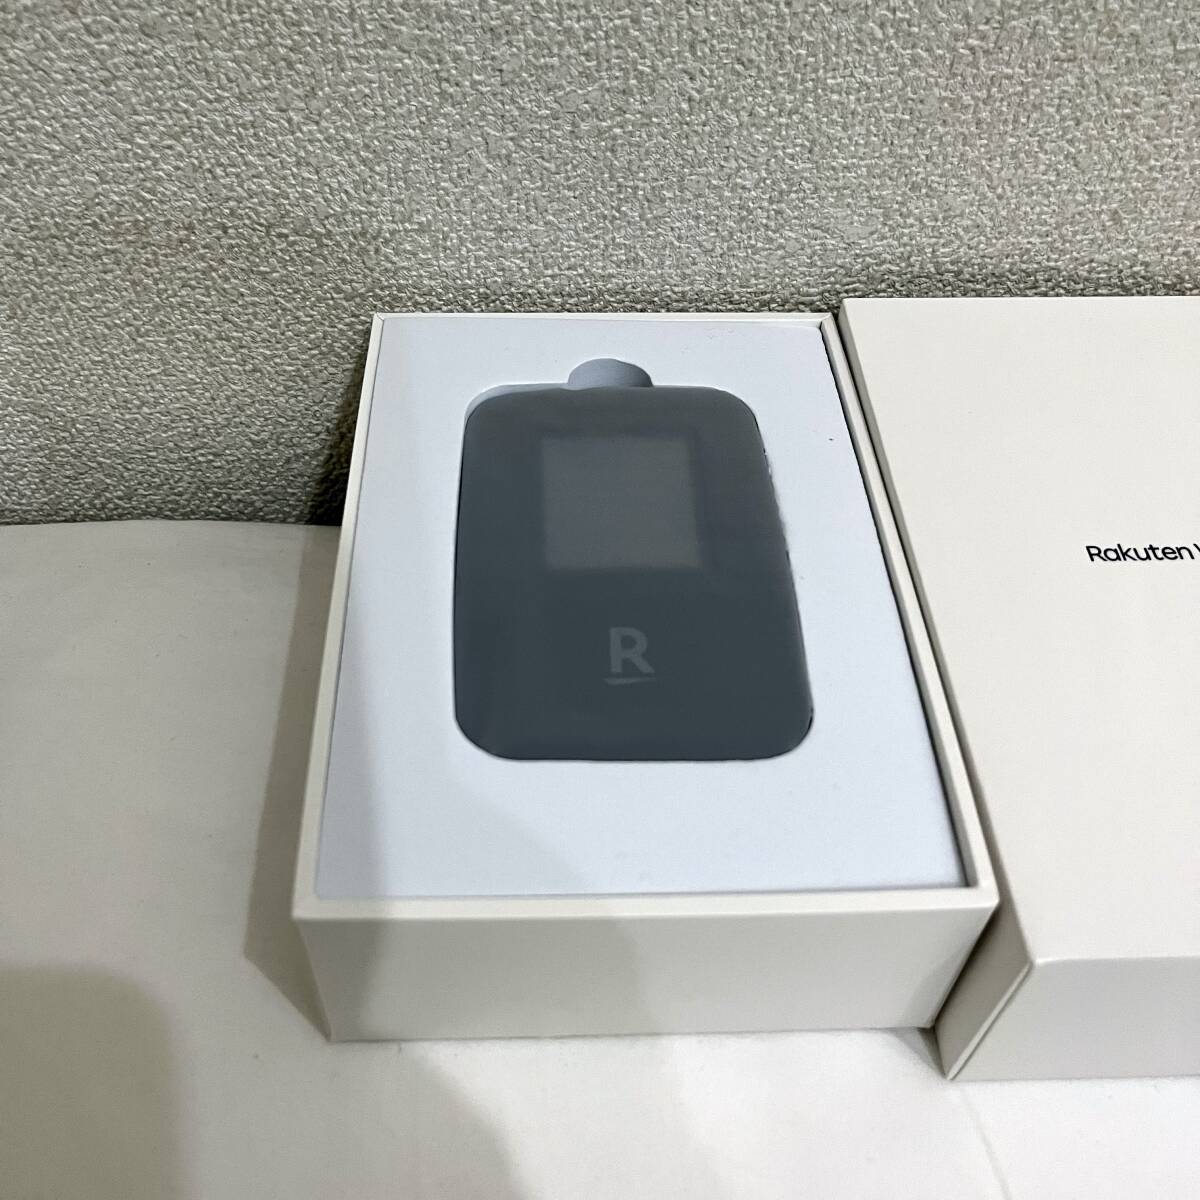 新品未使用 Rakuten WiFi Pocket R310 モバイルルーター ブラック 黒の画像1